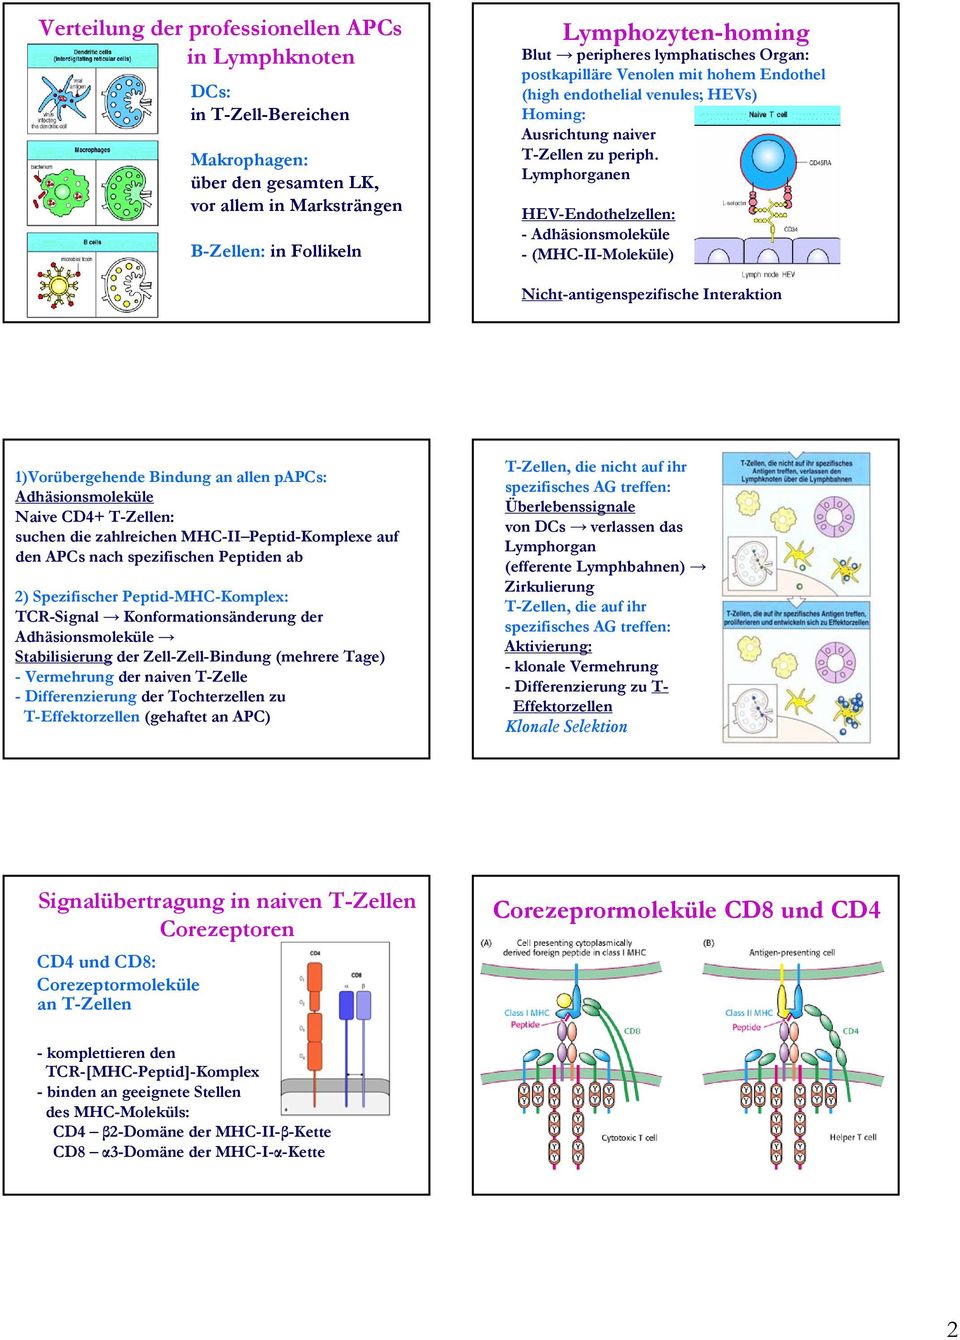 Lymphorganen HEV-Endothelzellen: - Adhäsionsmoleküle - (MHC-II-Moleküle) Nicht-antigenspezifische Interaktion 1)Vorübergehende Bindung an allen papcs: Adhäsionsmoleküle Naive CD4+ T-Zellen: suchen